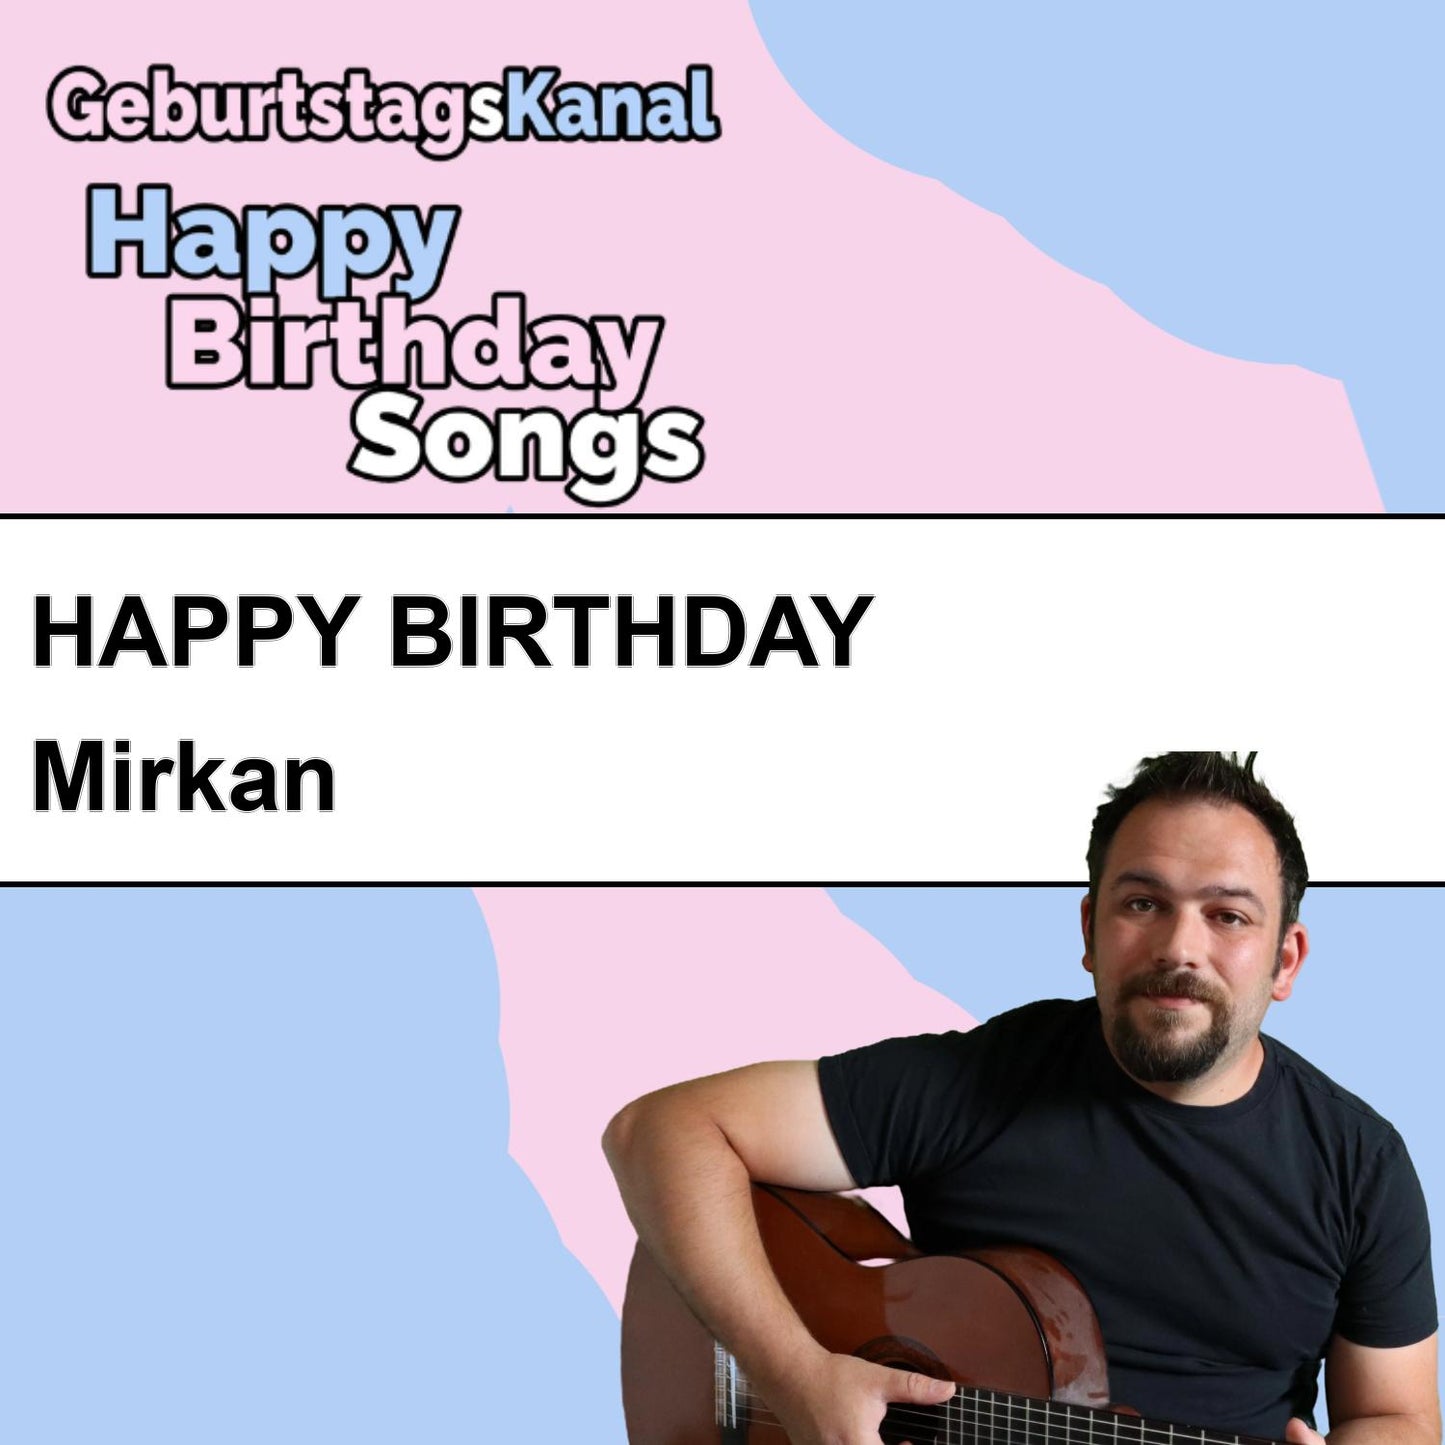 Produktbild Happy Birthday to you Mirkan mit Wunschgrußbotschaft